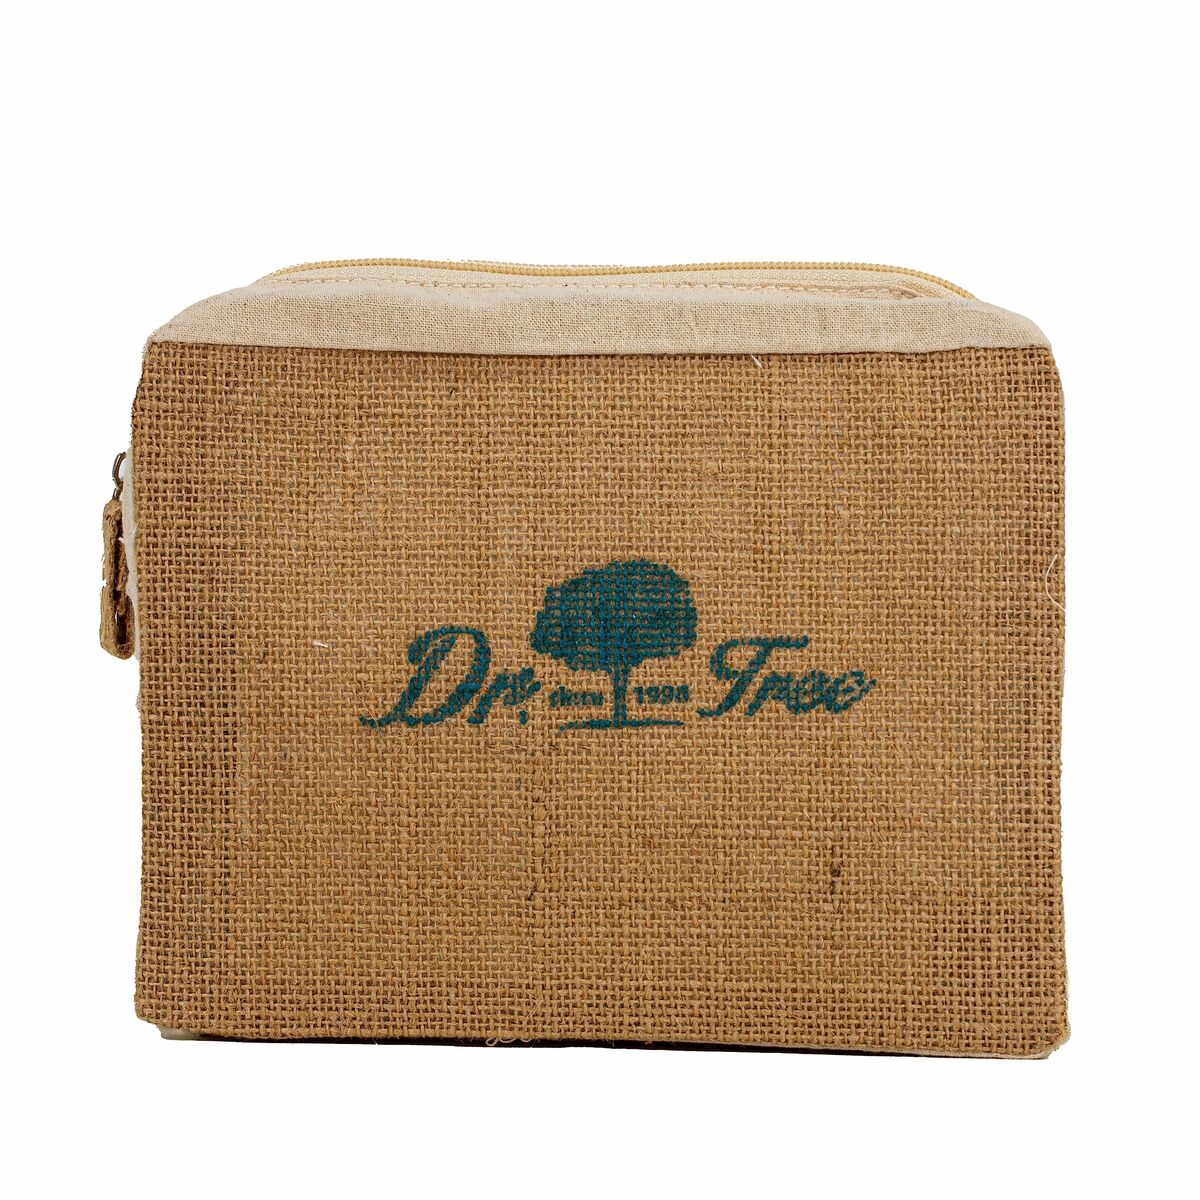 Duschset Dr. Tree The traveler's kit Empfindliche Haut 4 Stücke